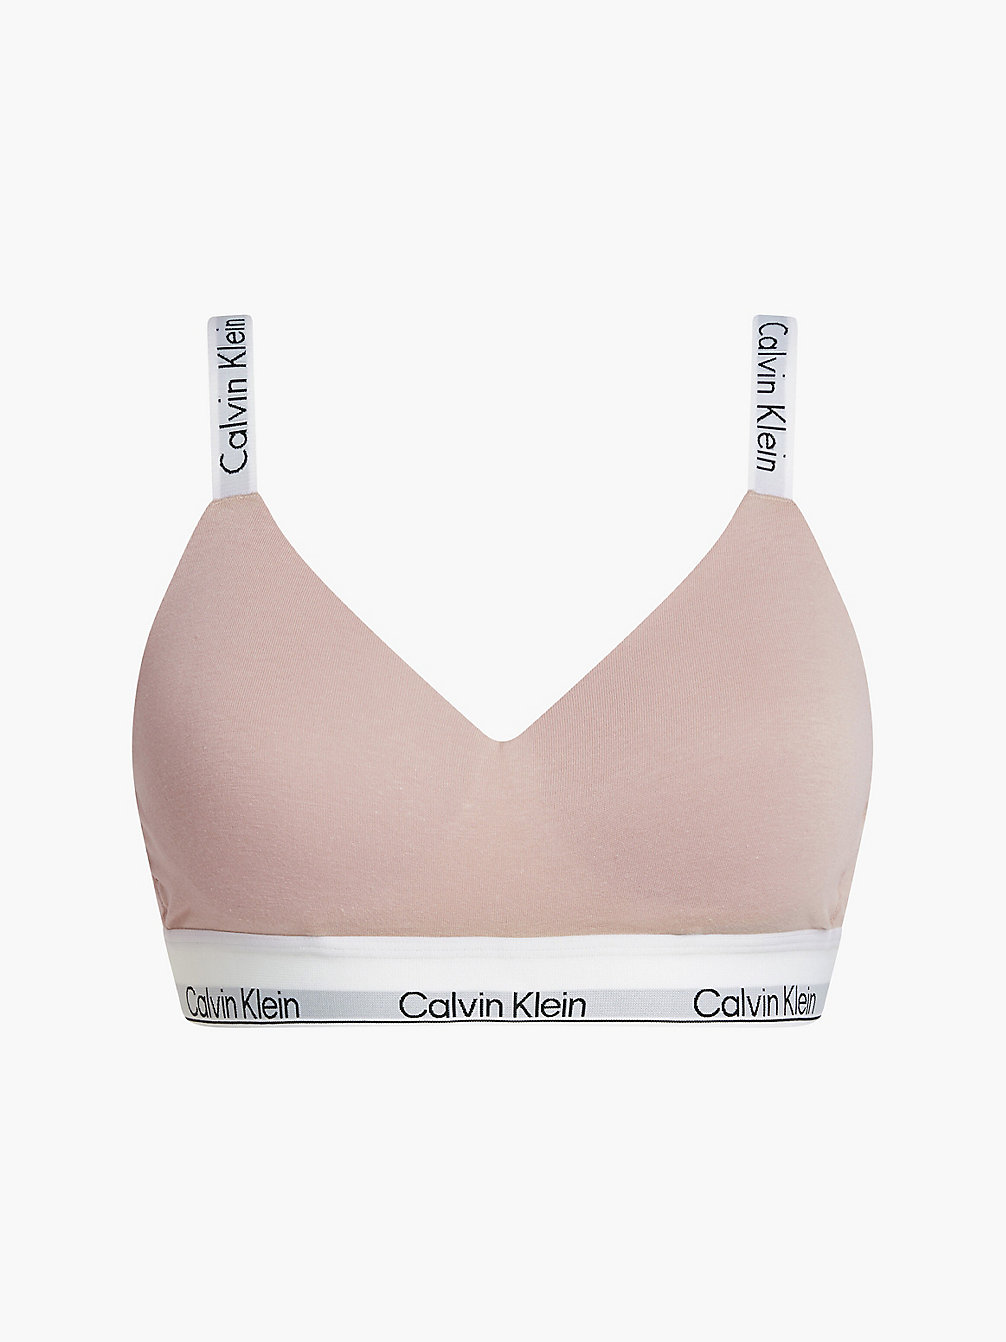 CEDAR > Bralette – Modern Cotton > undefined Damen - Calvin Klein